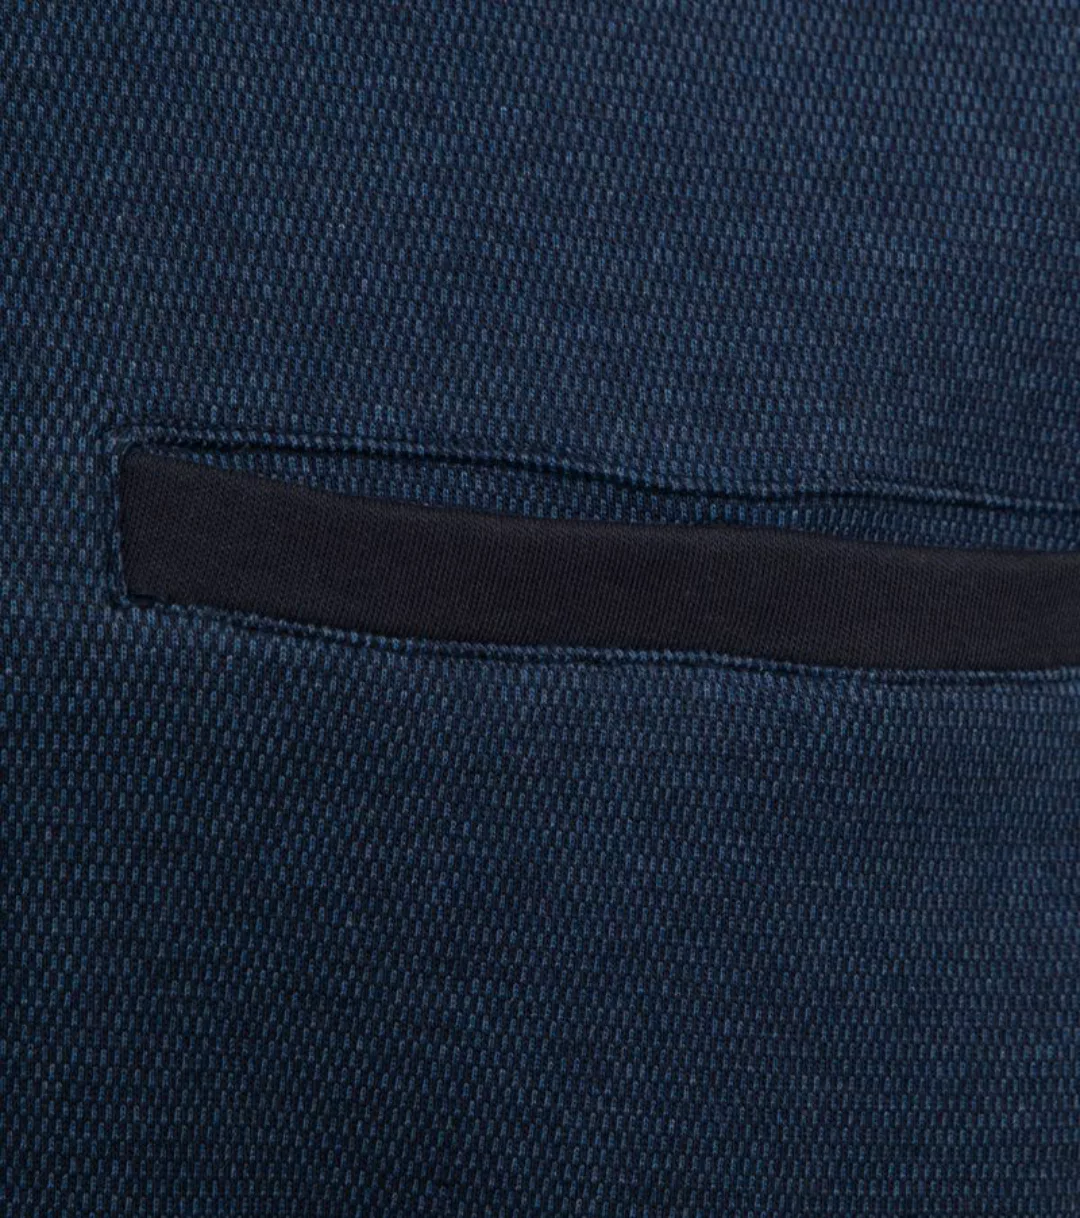 Casa Moda Halfzip Pullover Blau - Größe 4XL günstig online kaufen